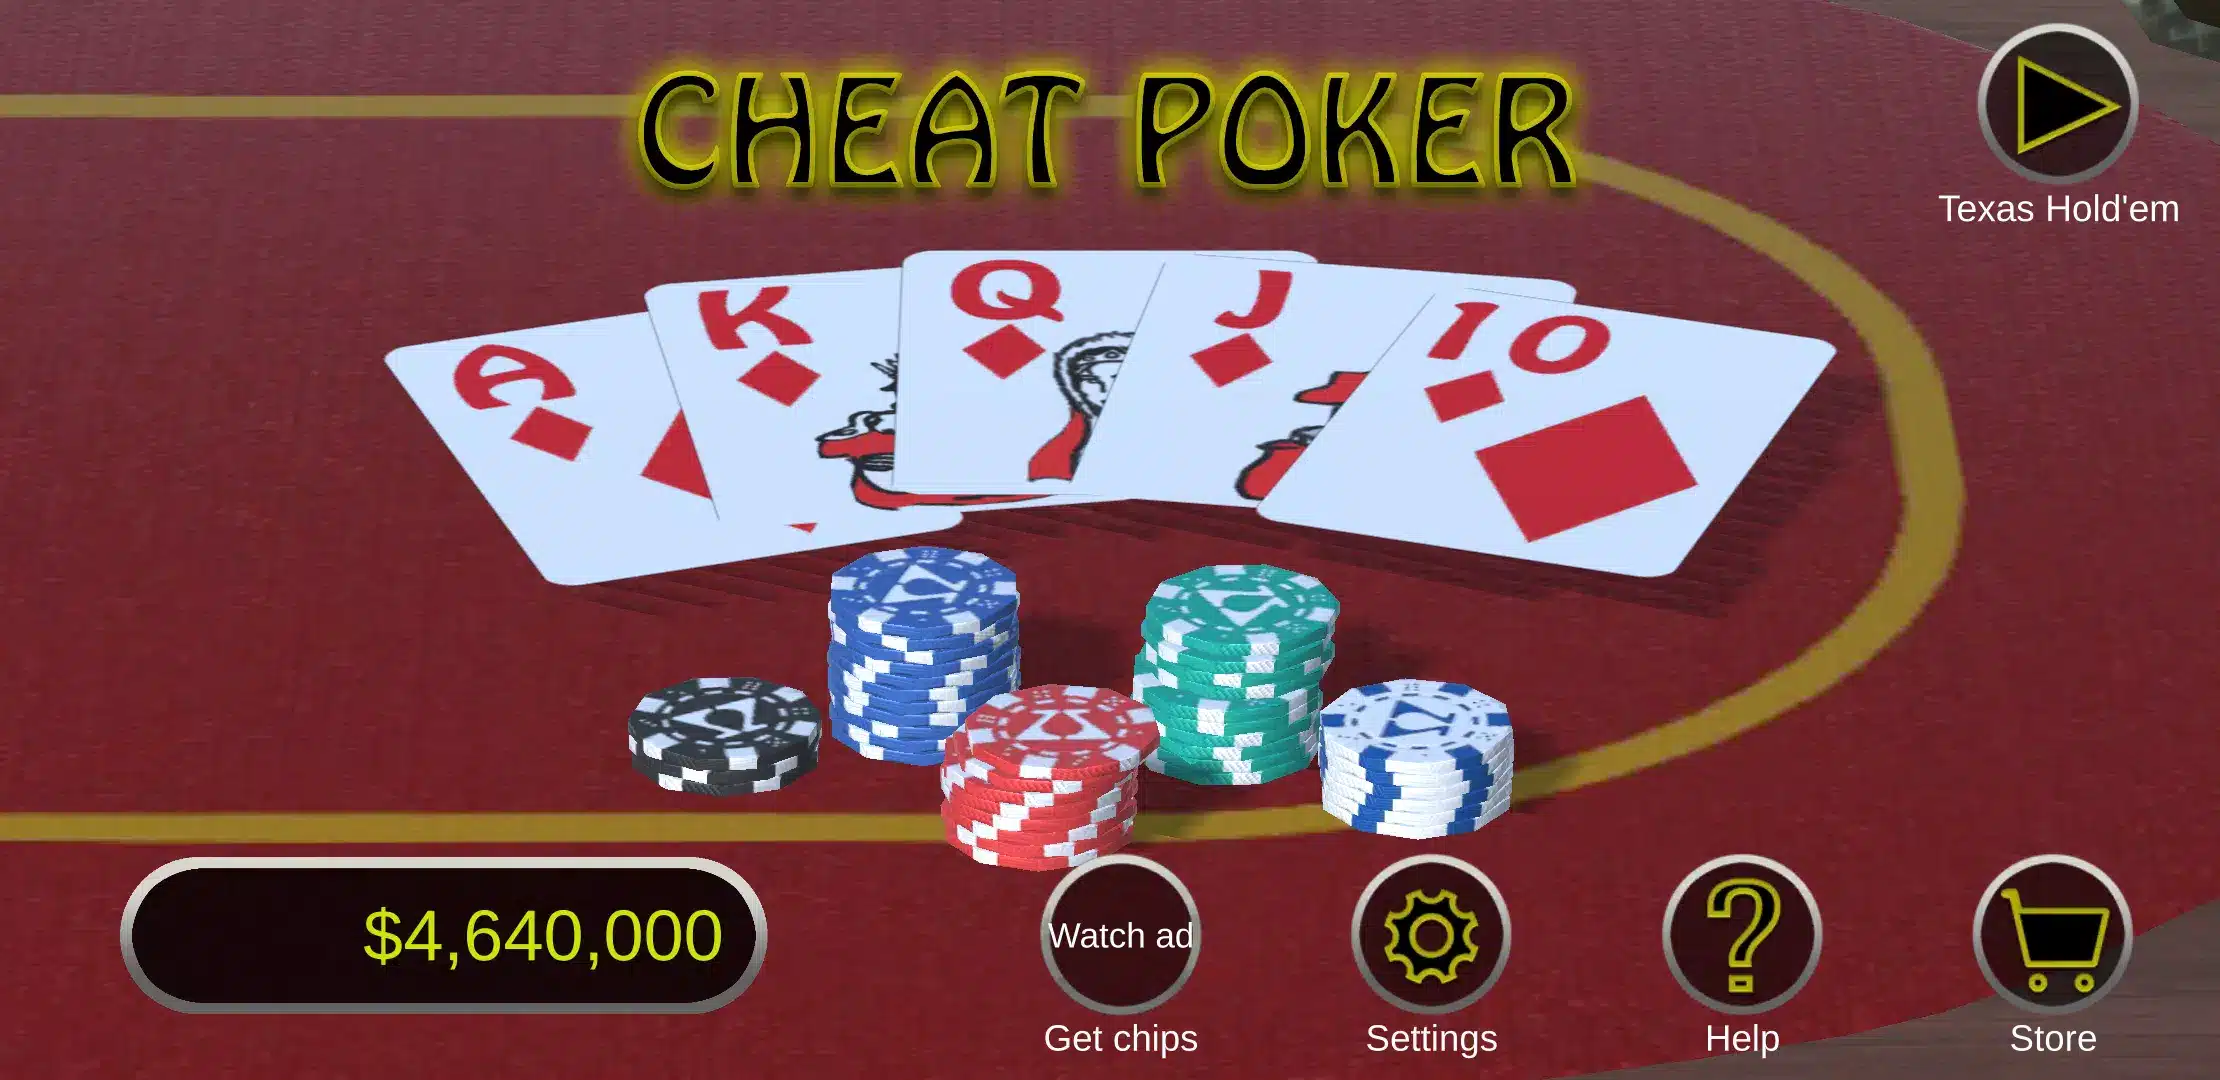 Cheat Poker Image 1